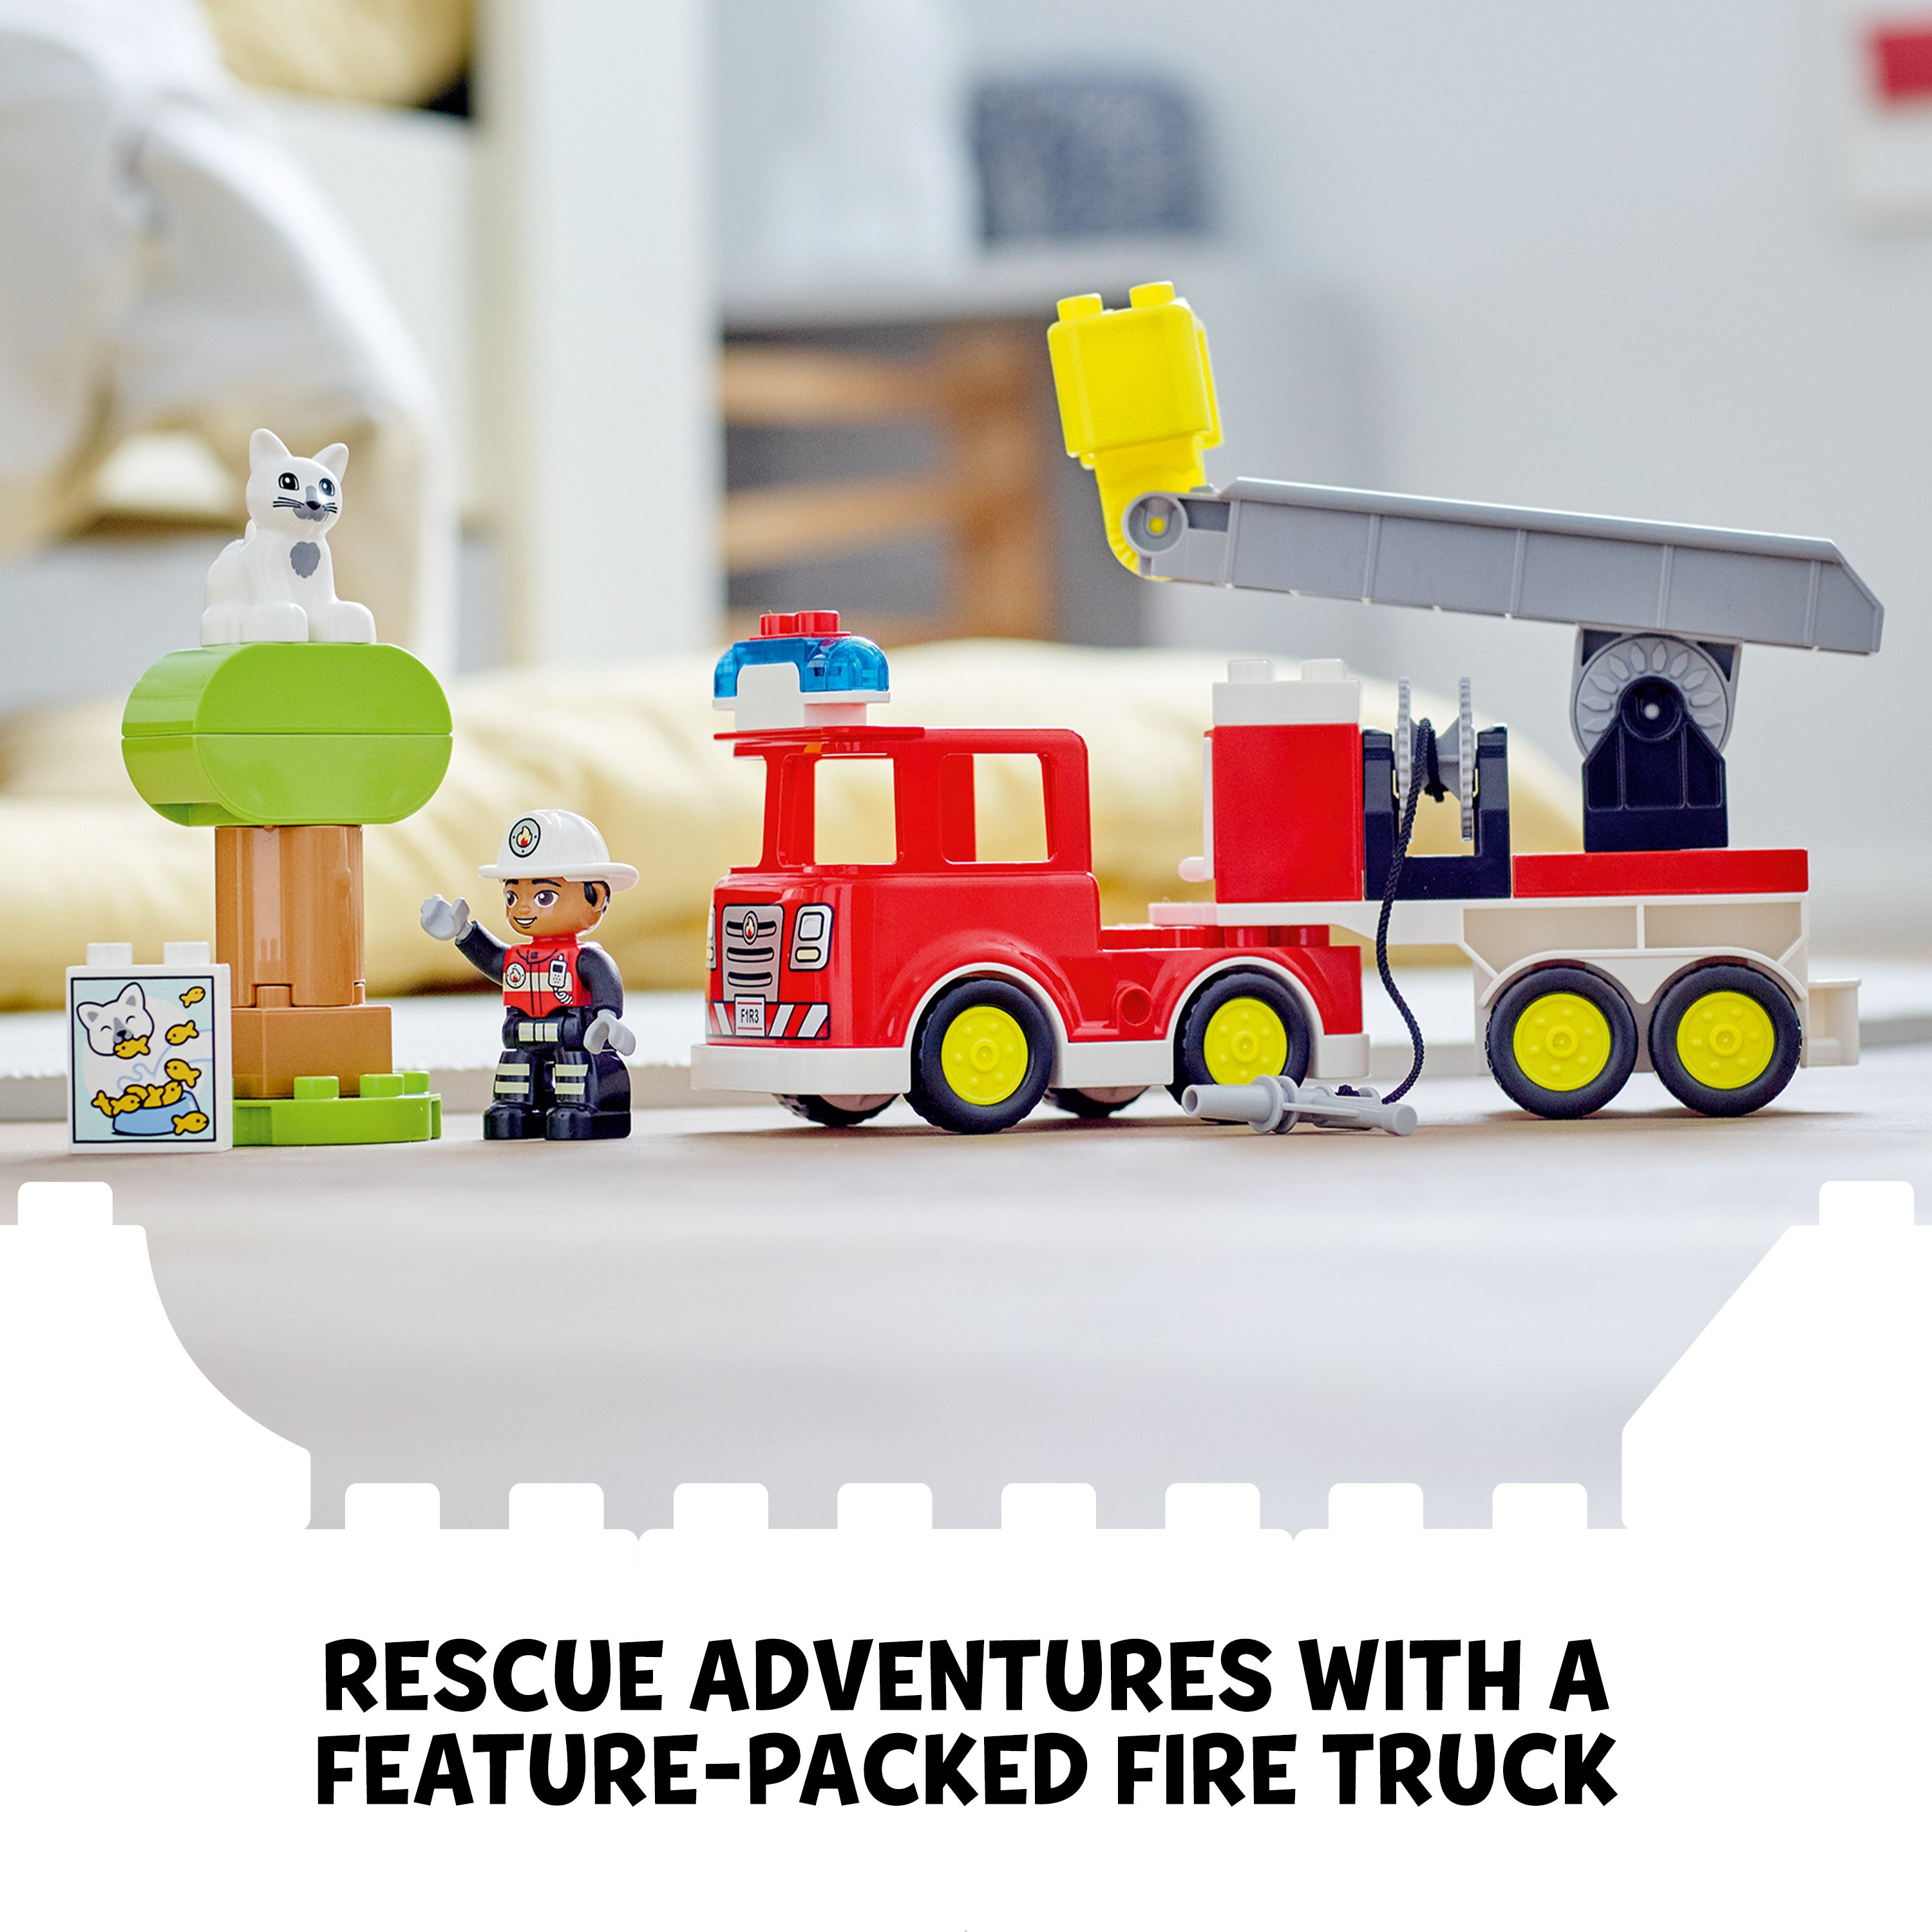 Lego 10969 Duplo Fire Truck